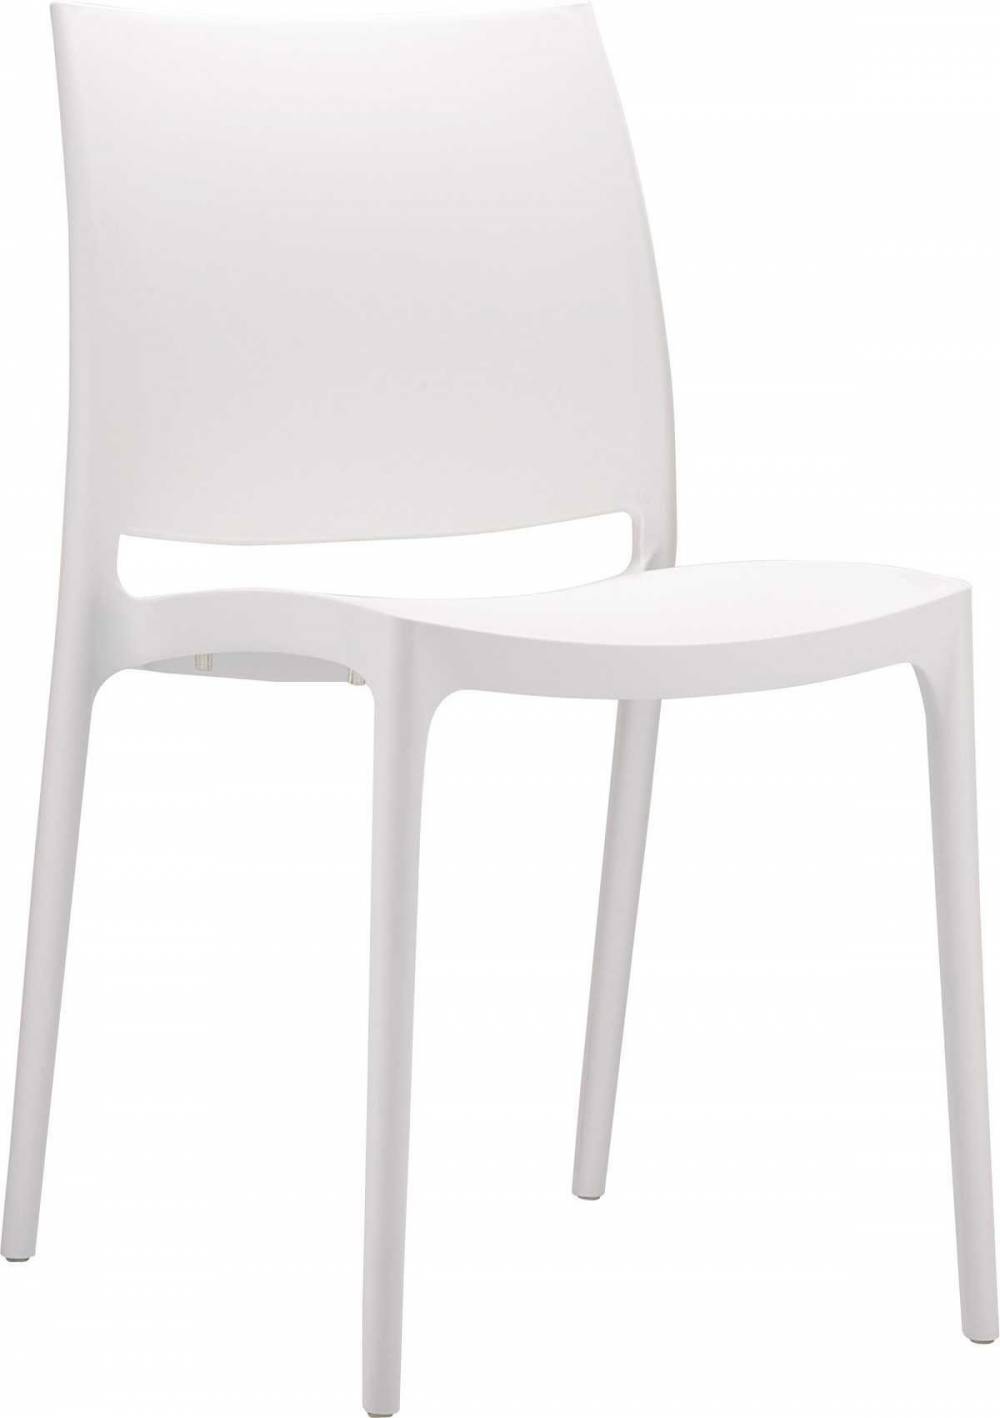 chaise-empilable-nova-polypropylene-blanche.jpg